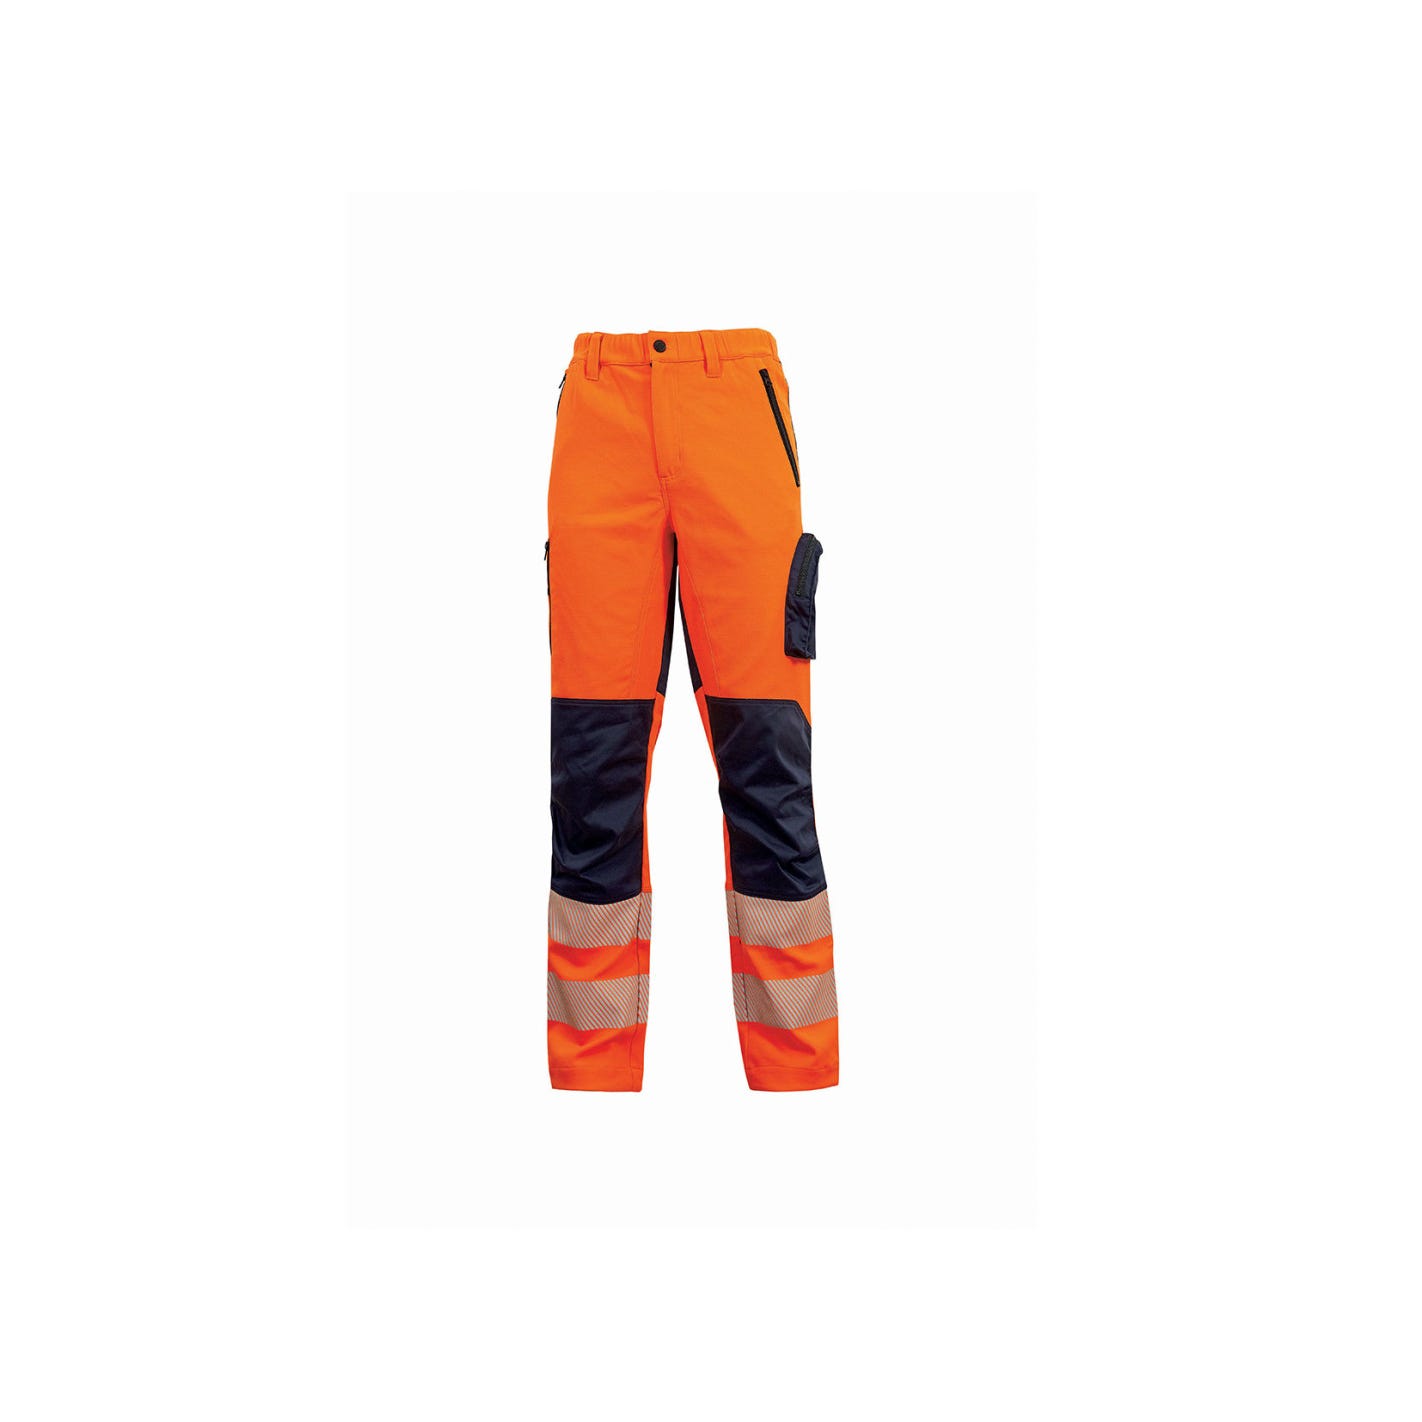 Pantalon haute visibilité ROY Orange Fluo | HL222OF - Upower 0